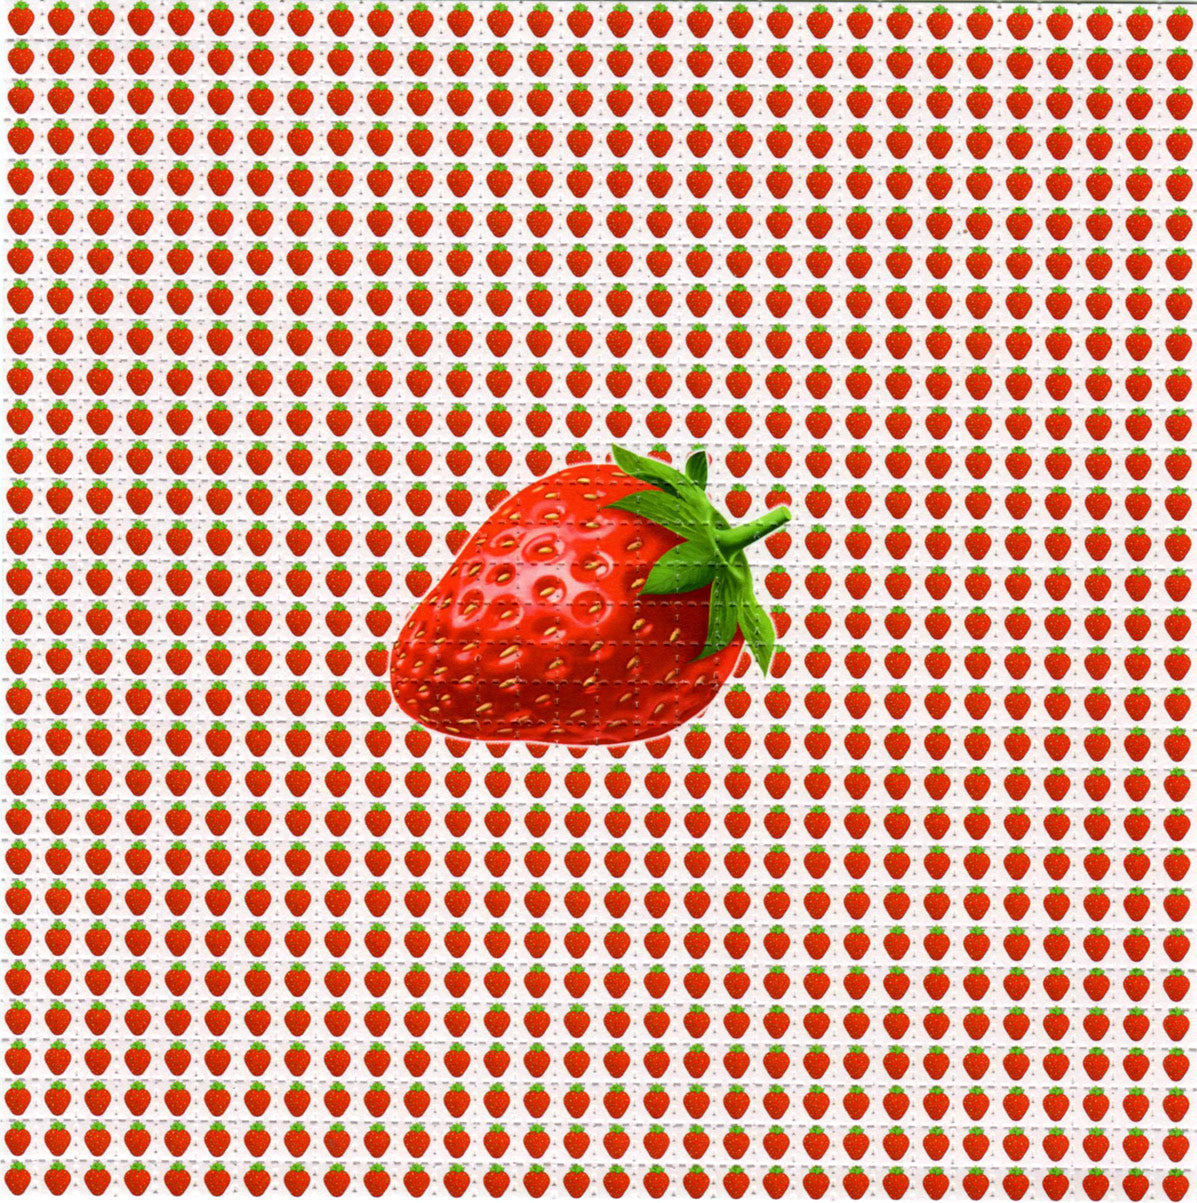 Strawberries LSD blotter art print